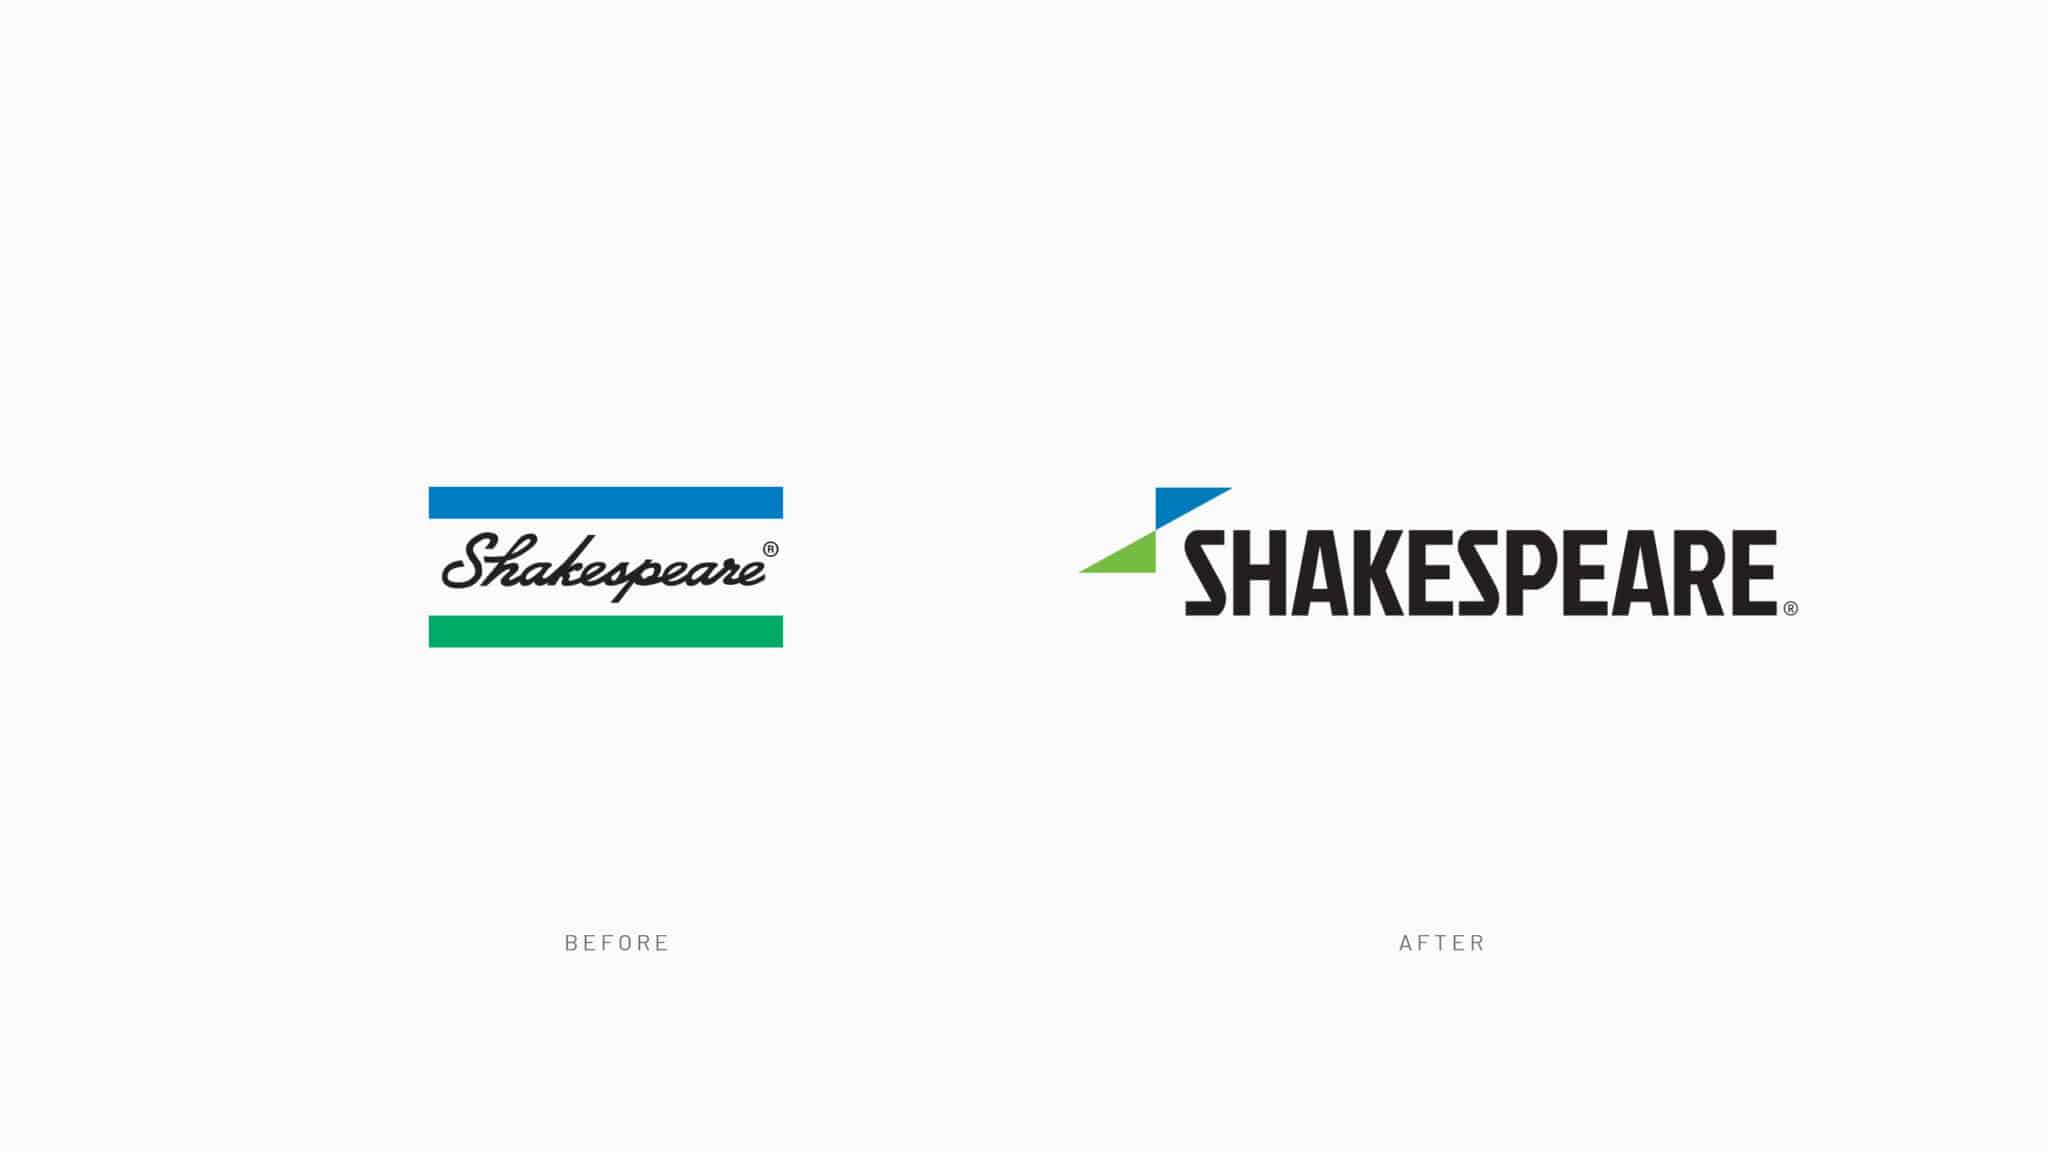 Shakespeare Branding Comparison